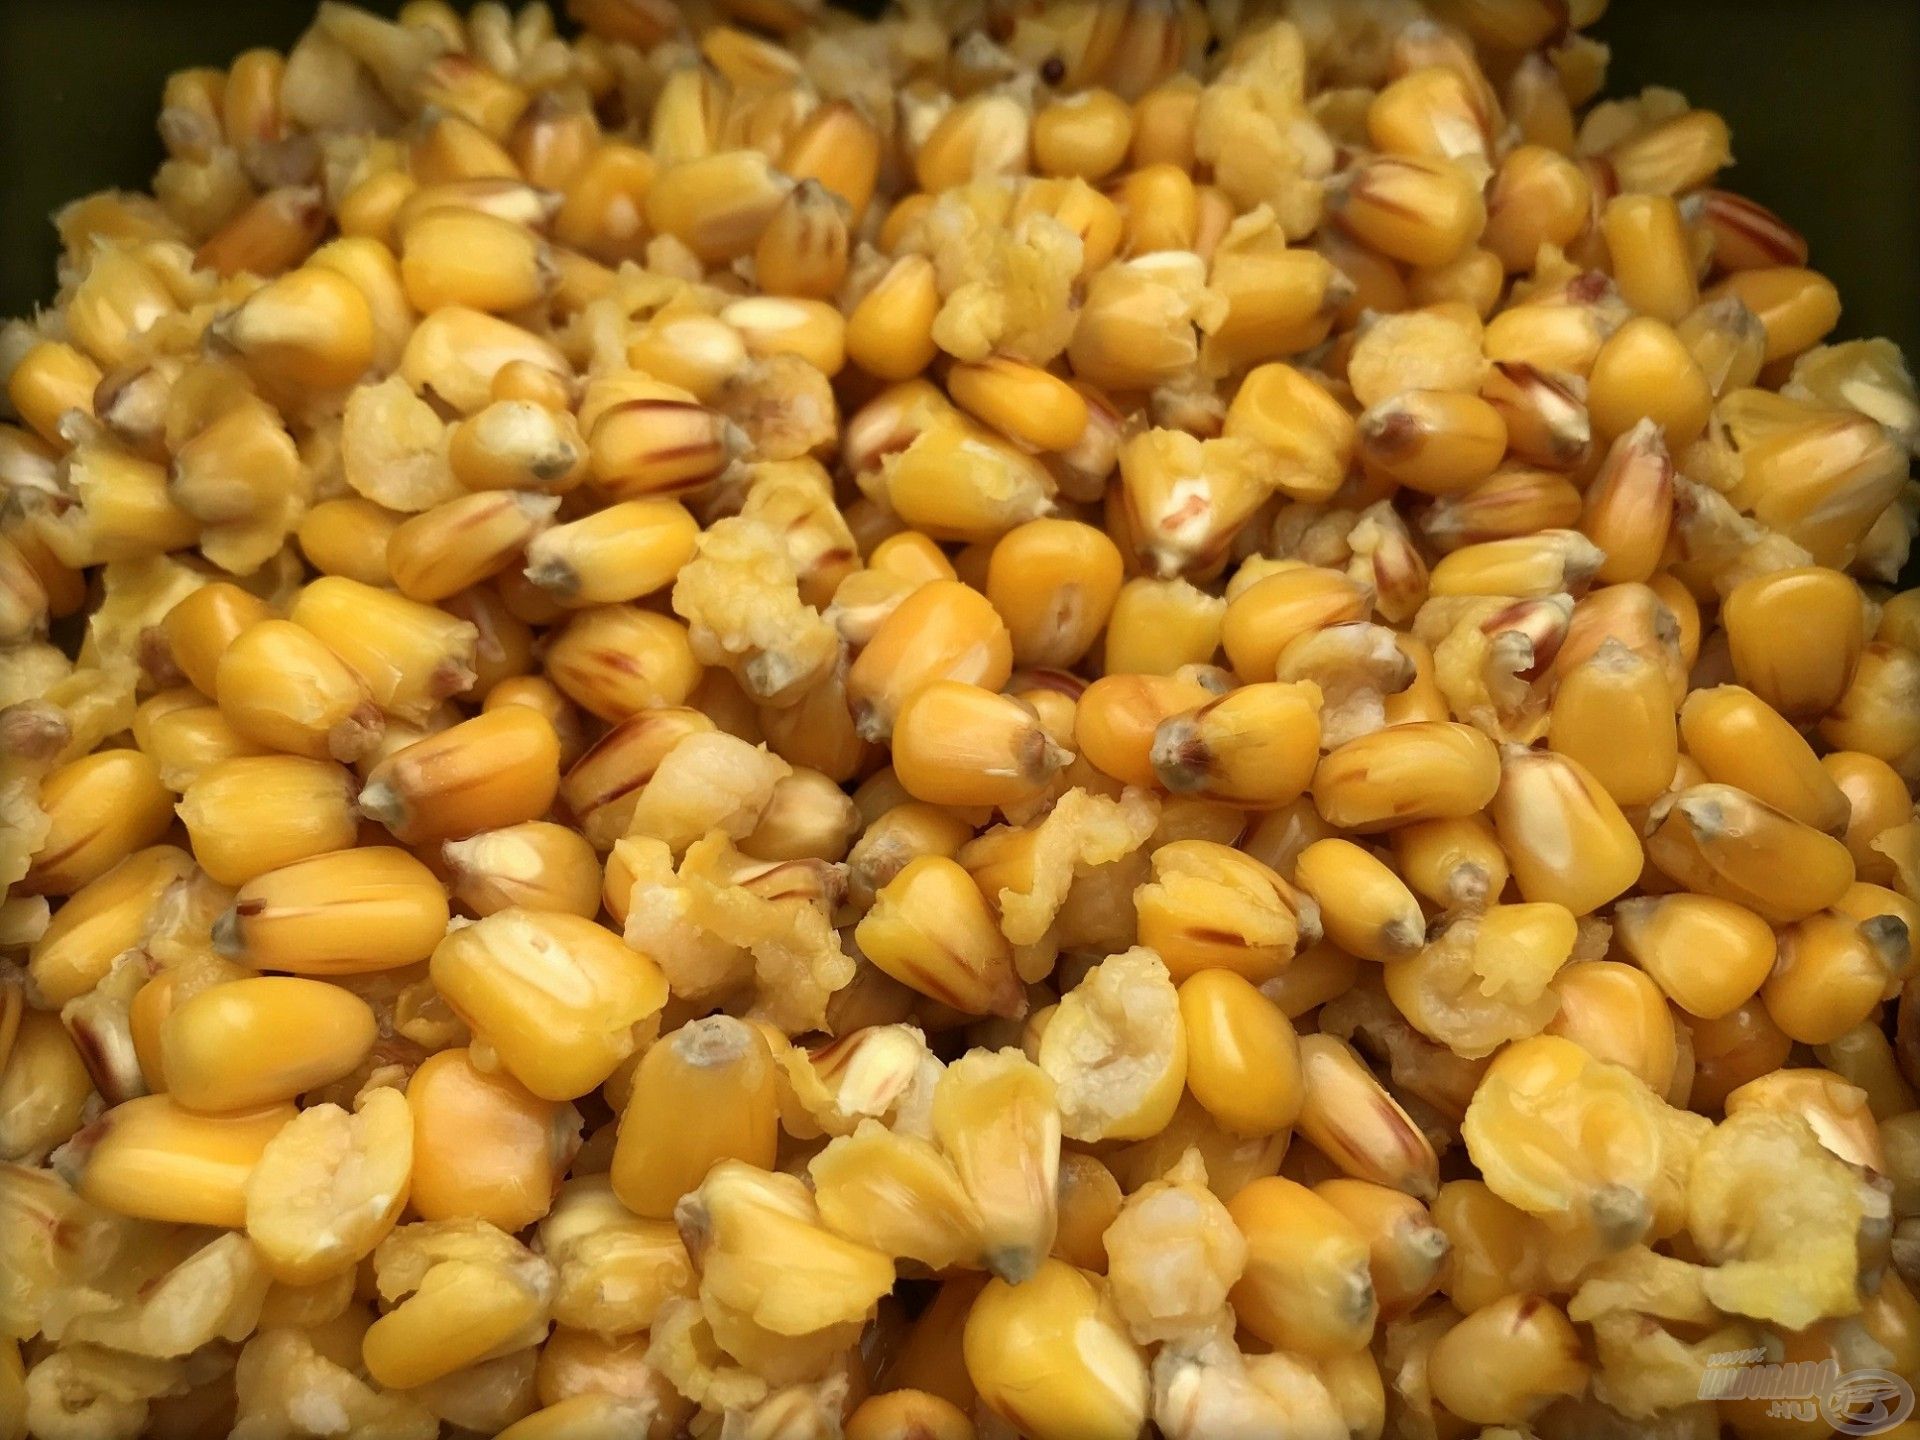 Az elmaradhatatlan főtt kukorica, ezzel viszont csínján kell bánni